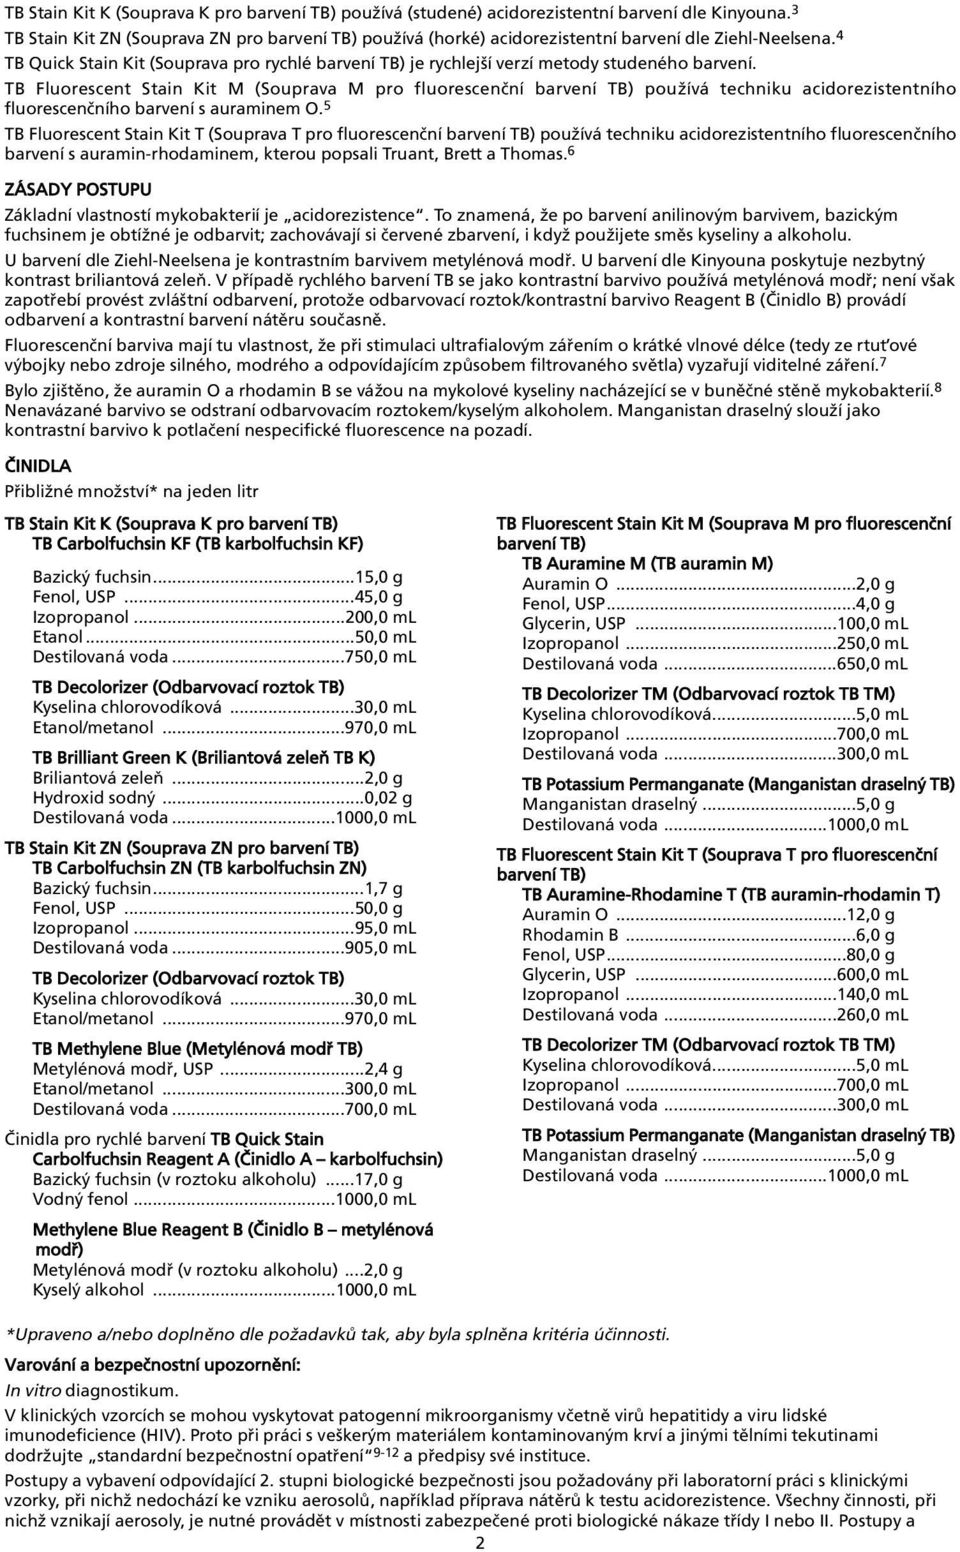 acidorezistentního fluorescenèního barvení s auraminem O 5 TB Fluorescent Stain Kit T (Souprava T pro fluorescenèní barvení TB) používá techniku acidorezistentního fluorescenèního barvení s